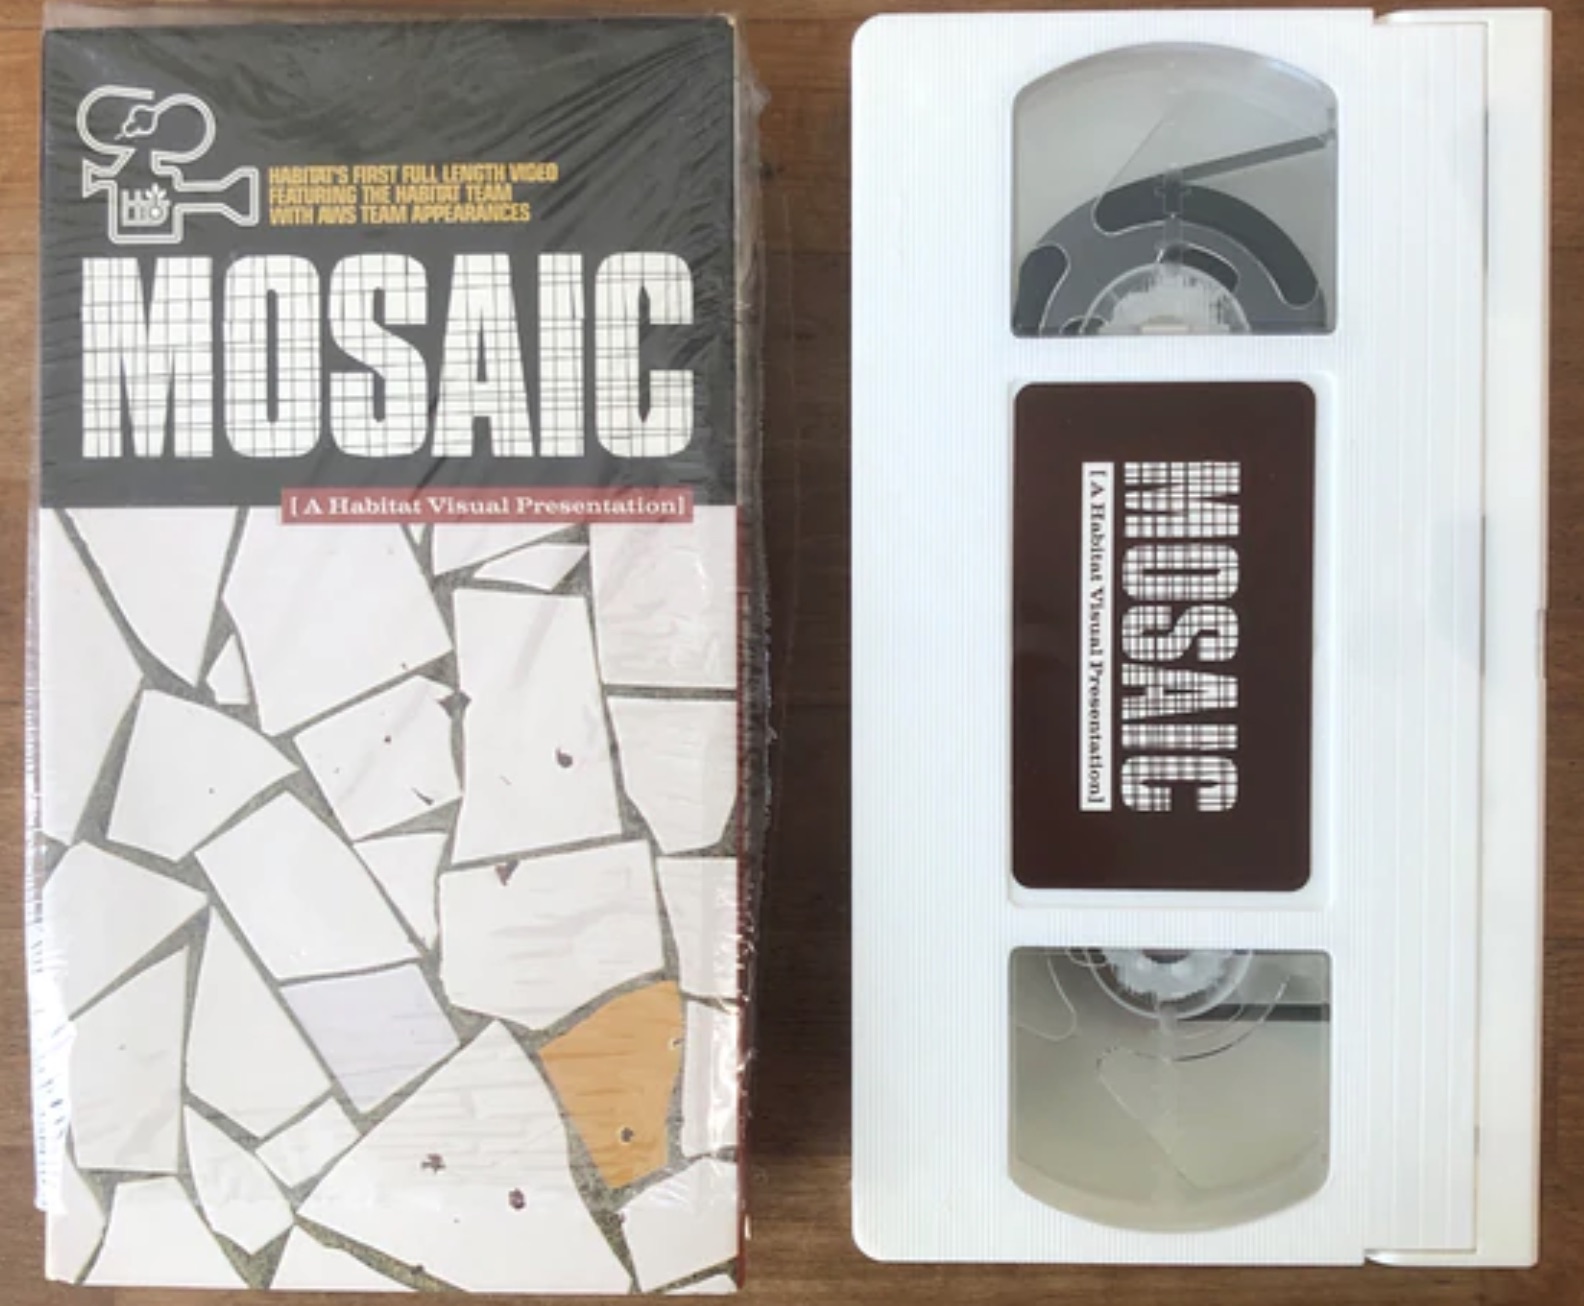 Habitat - Mosaic cover art